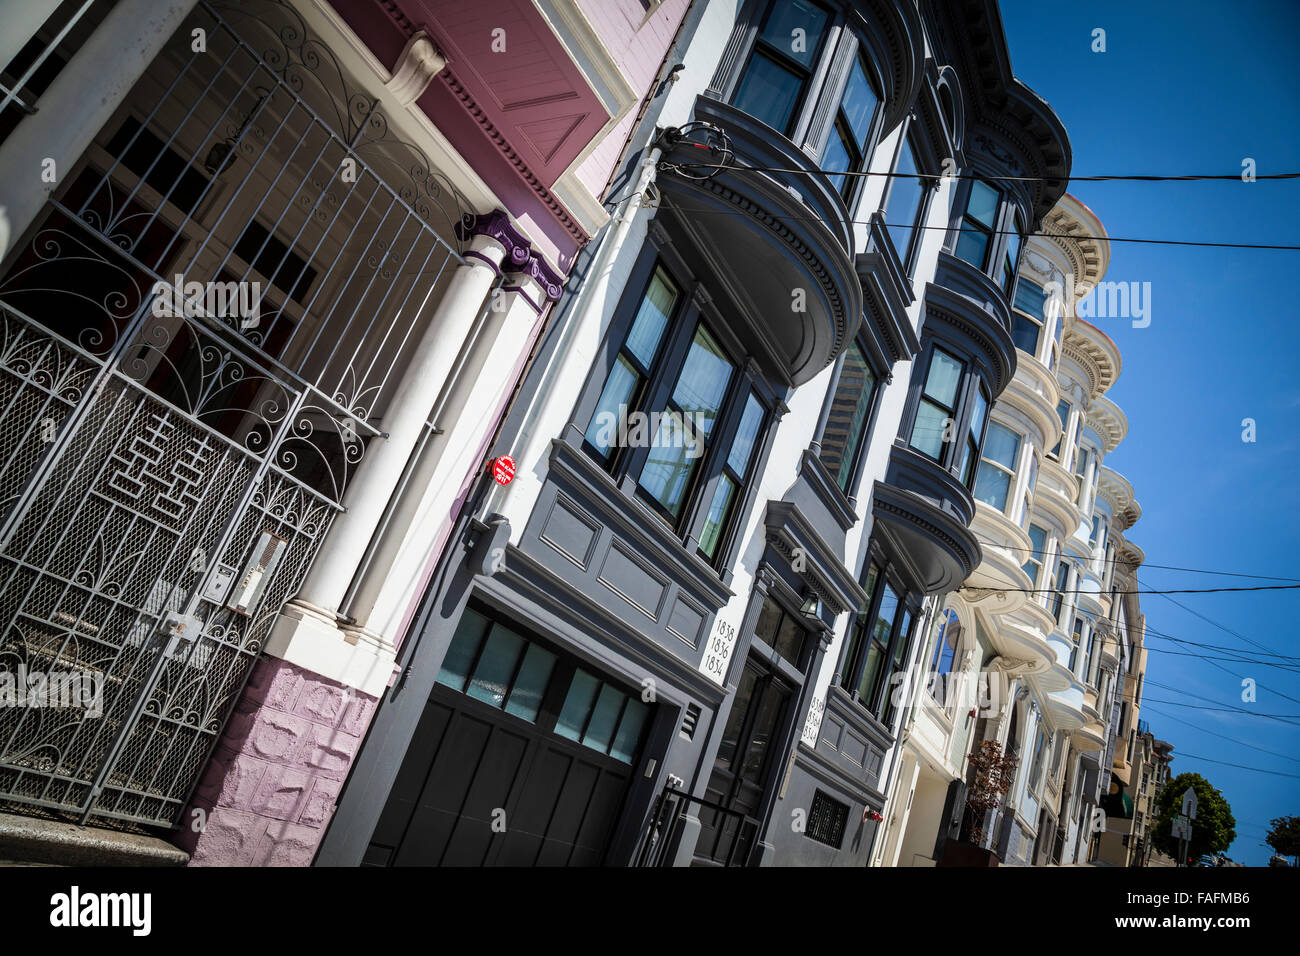 Maisons victoriennes de San Francisco près de Washington Square, California USA Banque D'Images